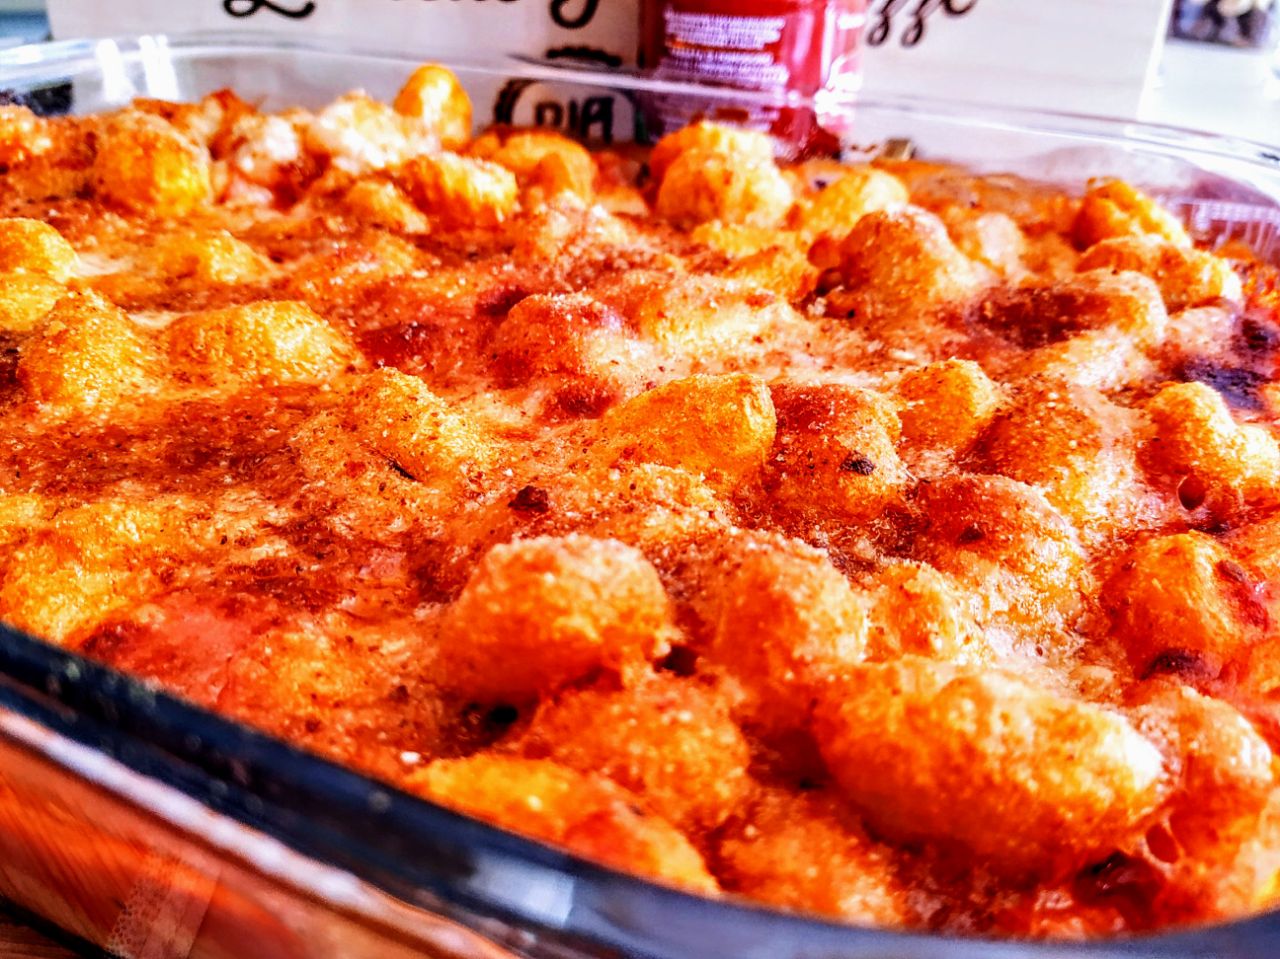 Primi piatti senza glutine: gnocchi di patate al forno con sugo di pomodoro e mozzarella filante!